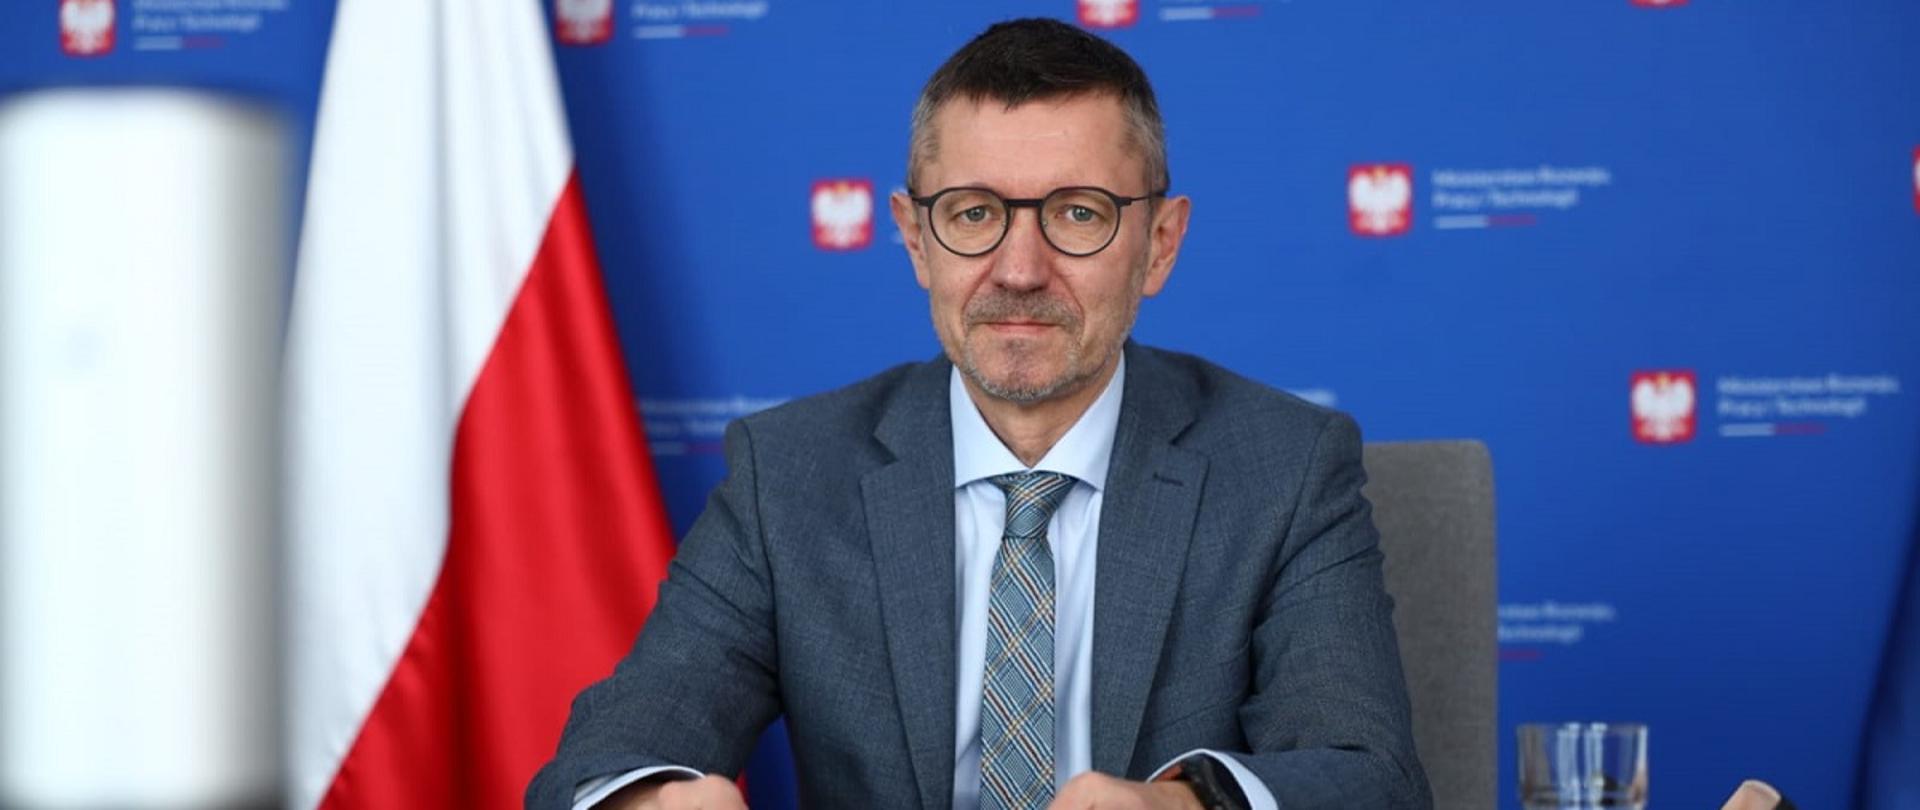 Wiceminister rozwoju, pracy i technologii Robert Tomanek siedzący przy stole, z tyłu za jego plecami flaga Polski i baner MRPiT